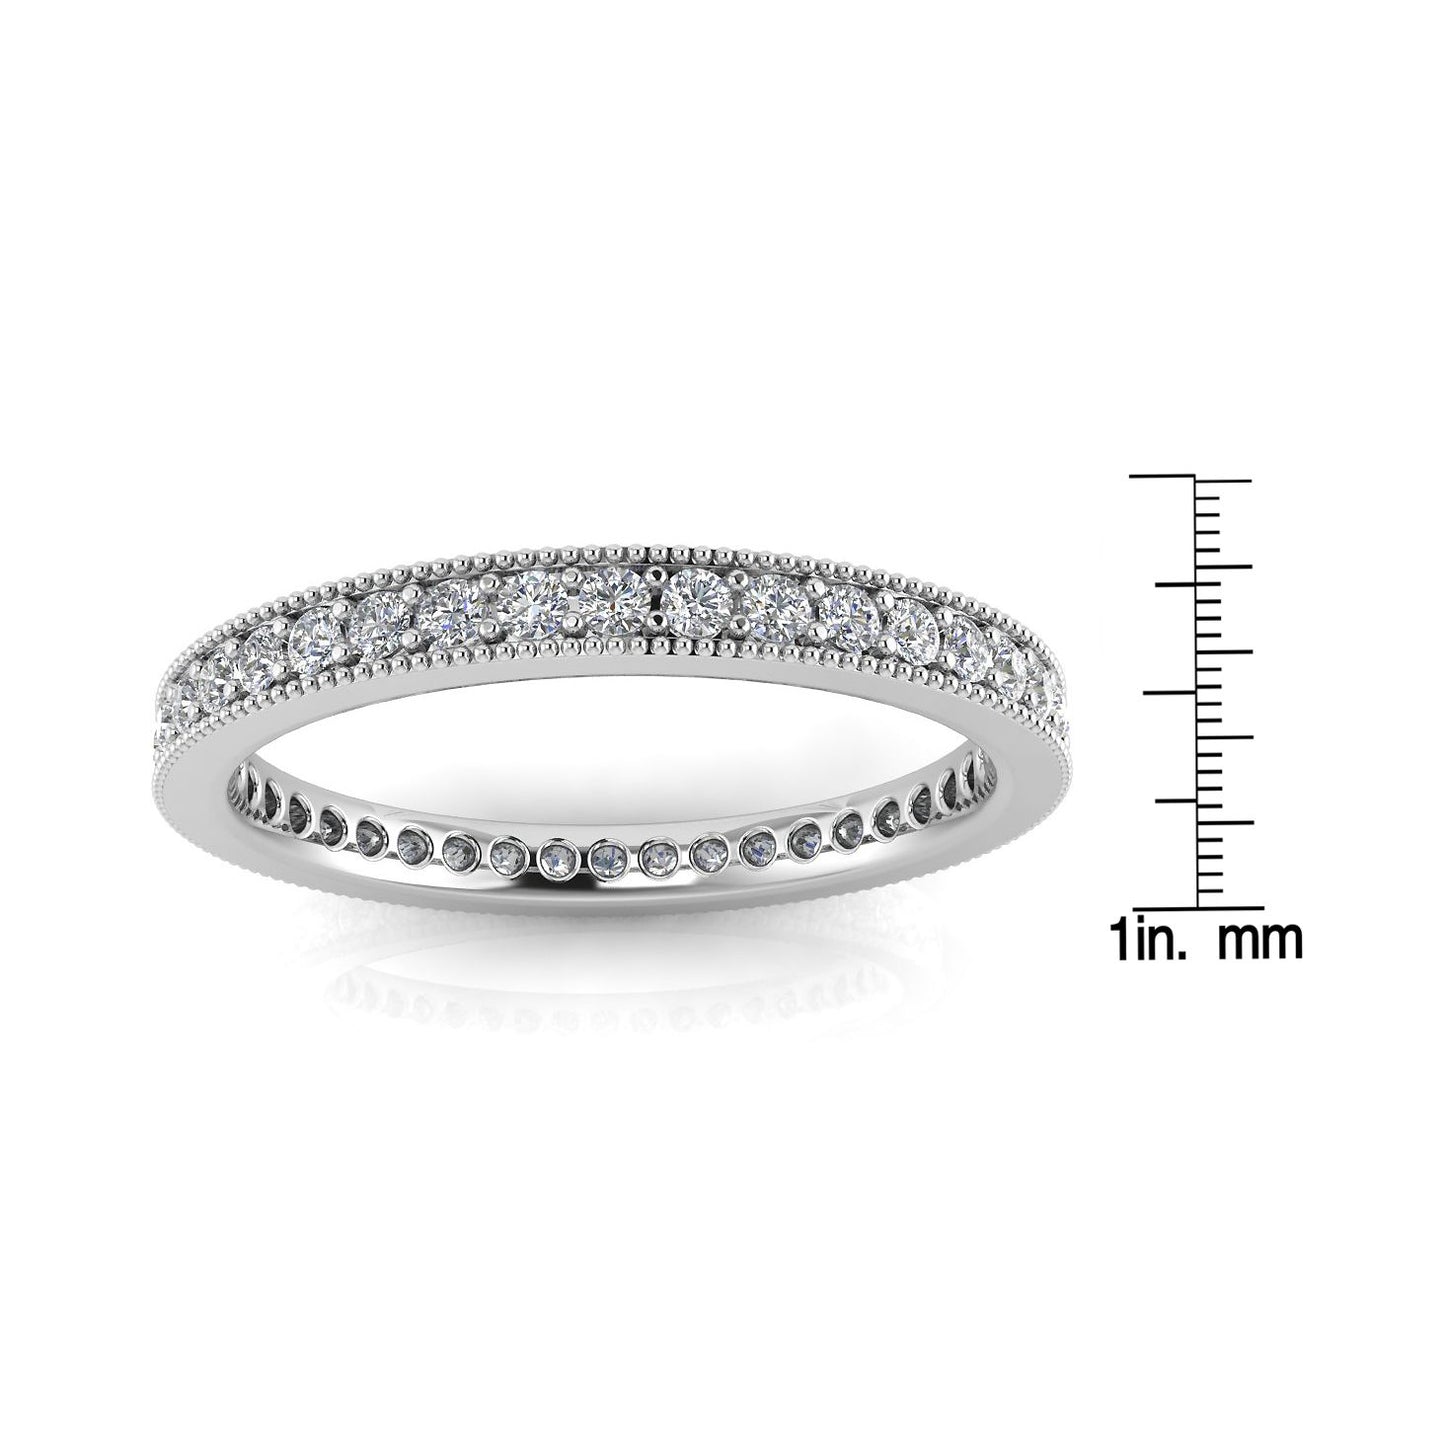 Round Brilliant Cut Diamond Pave & Milgrain Set Eternity Ring In Platinum  (0.43ct. Tw.) Ring Size 4